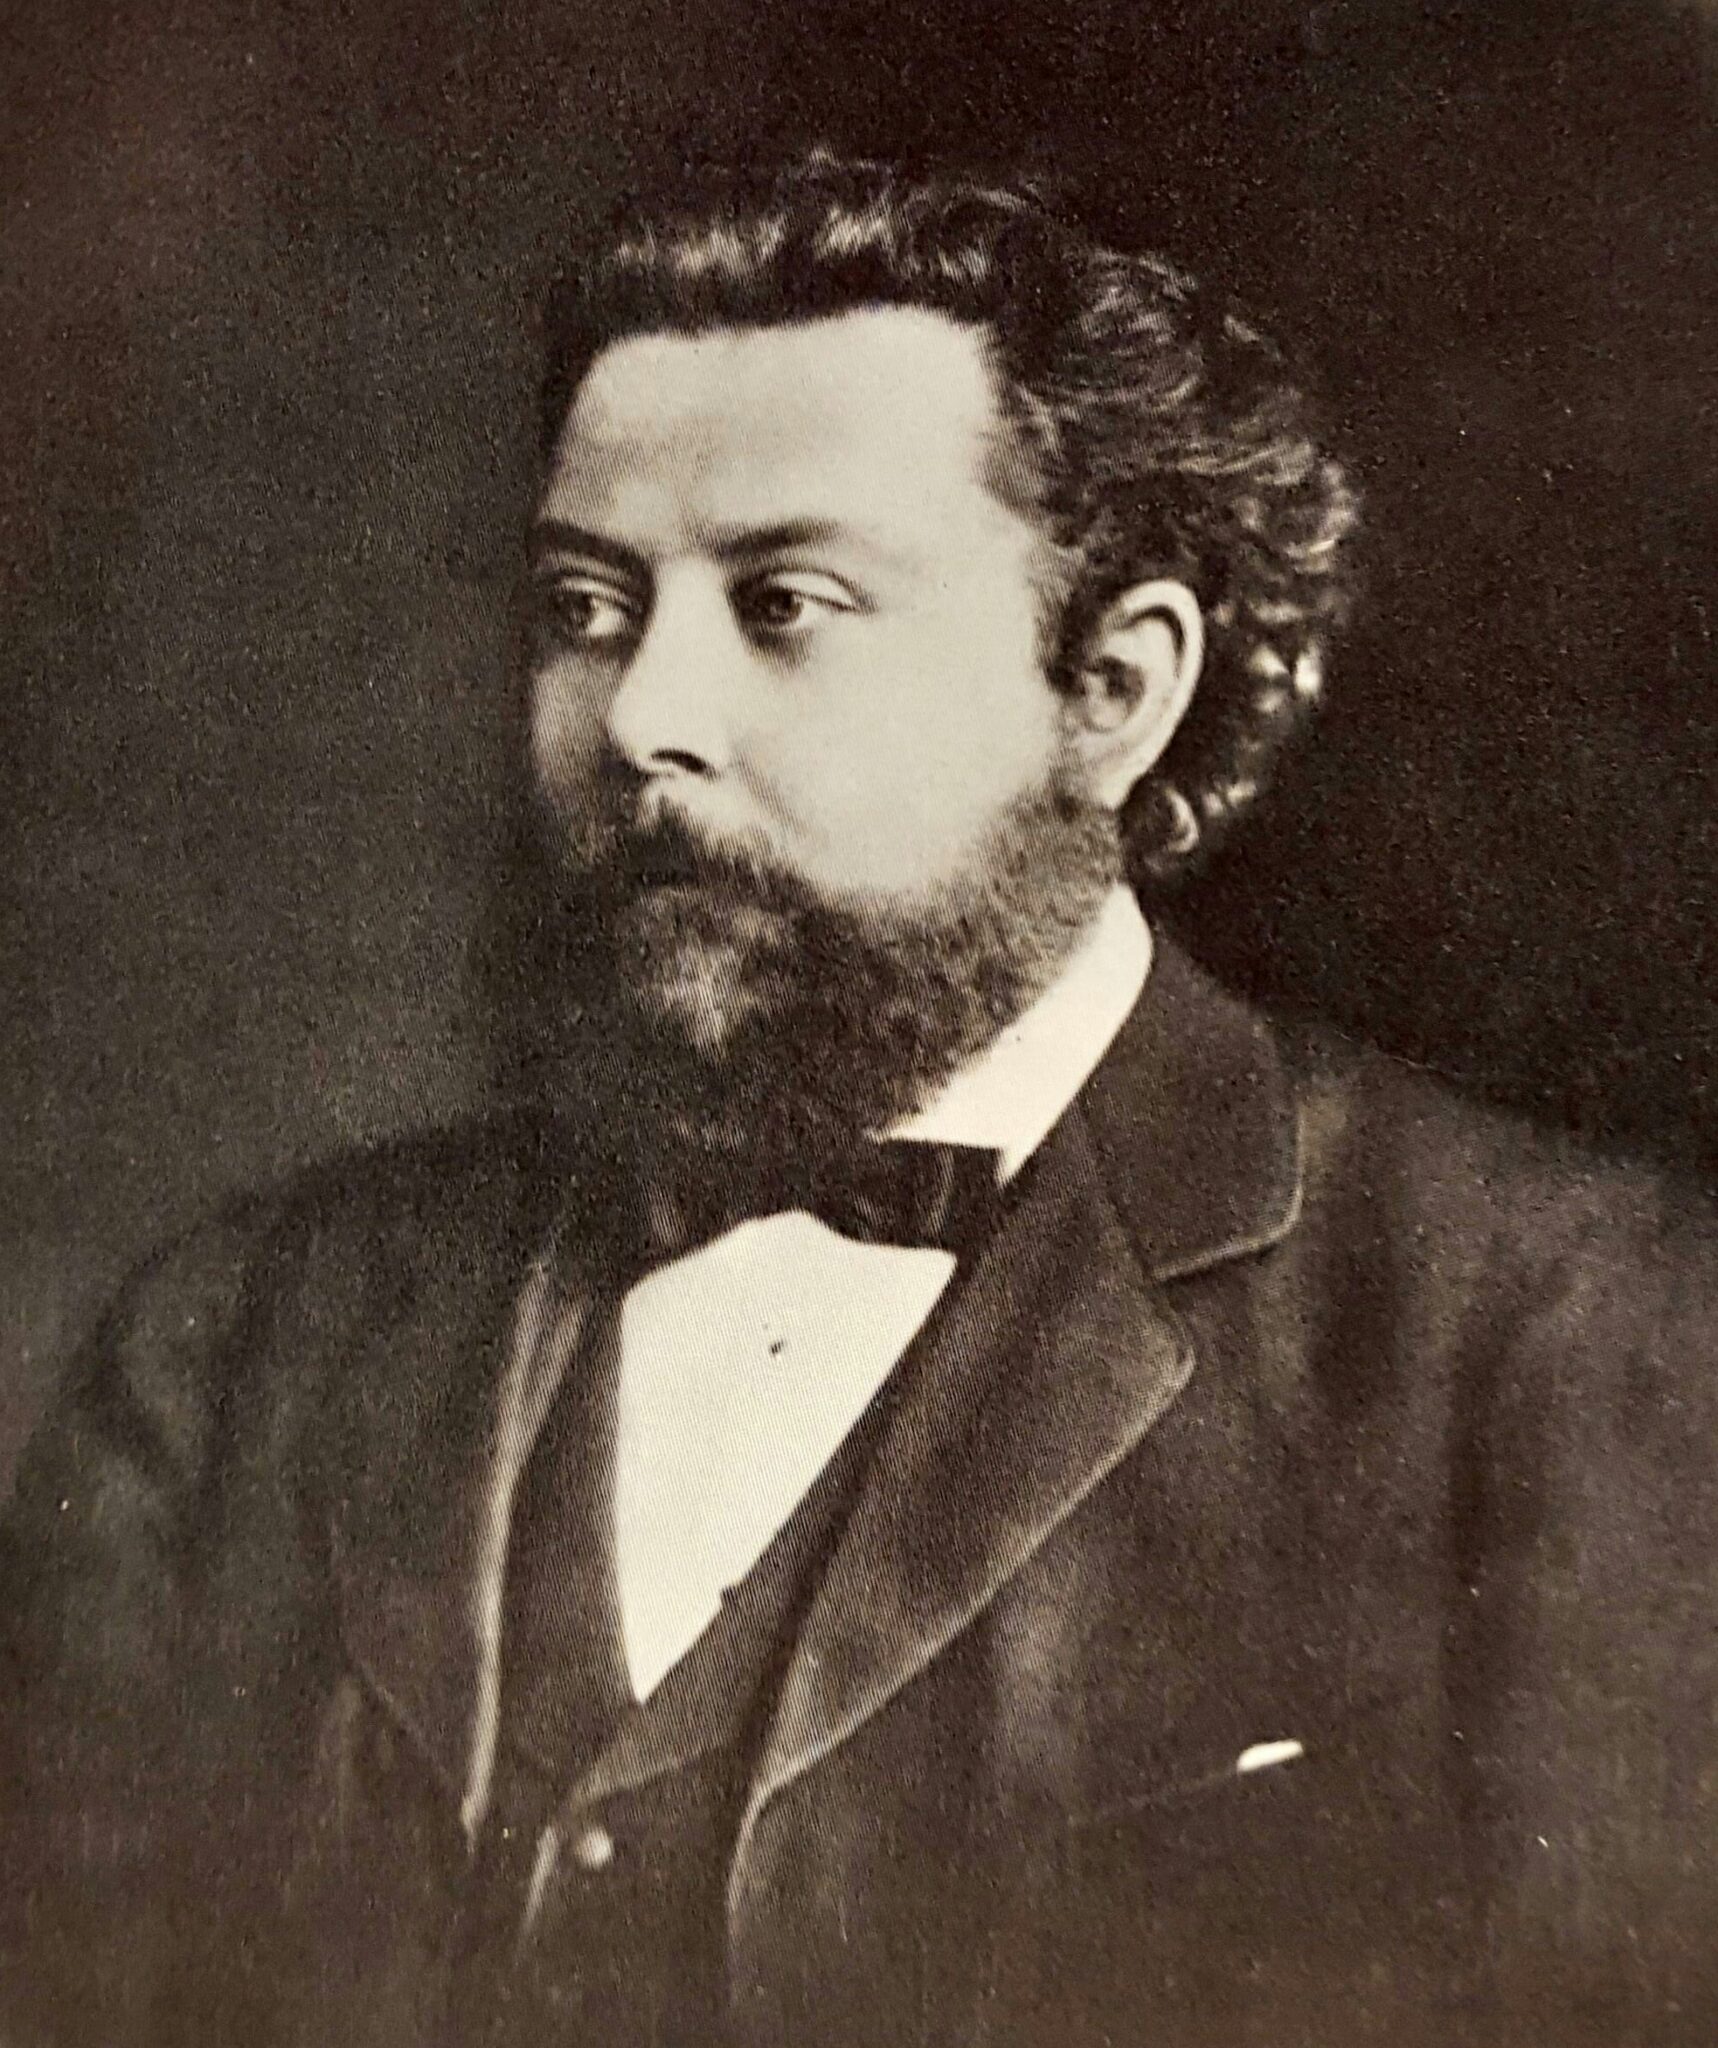 Porträt von Modest Mussorgski 1876